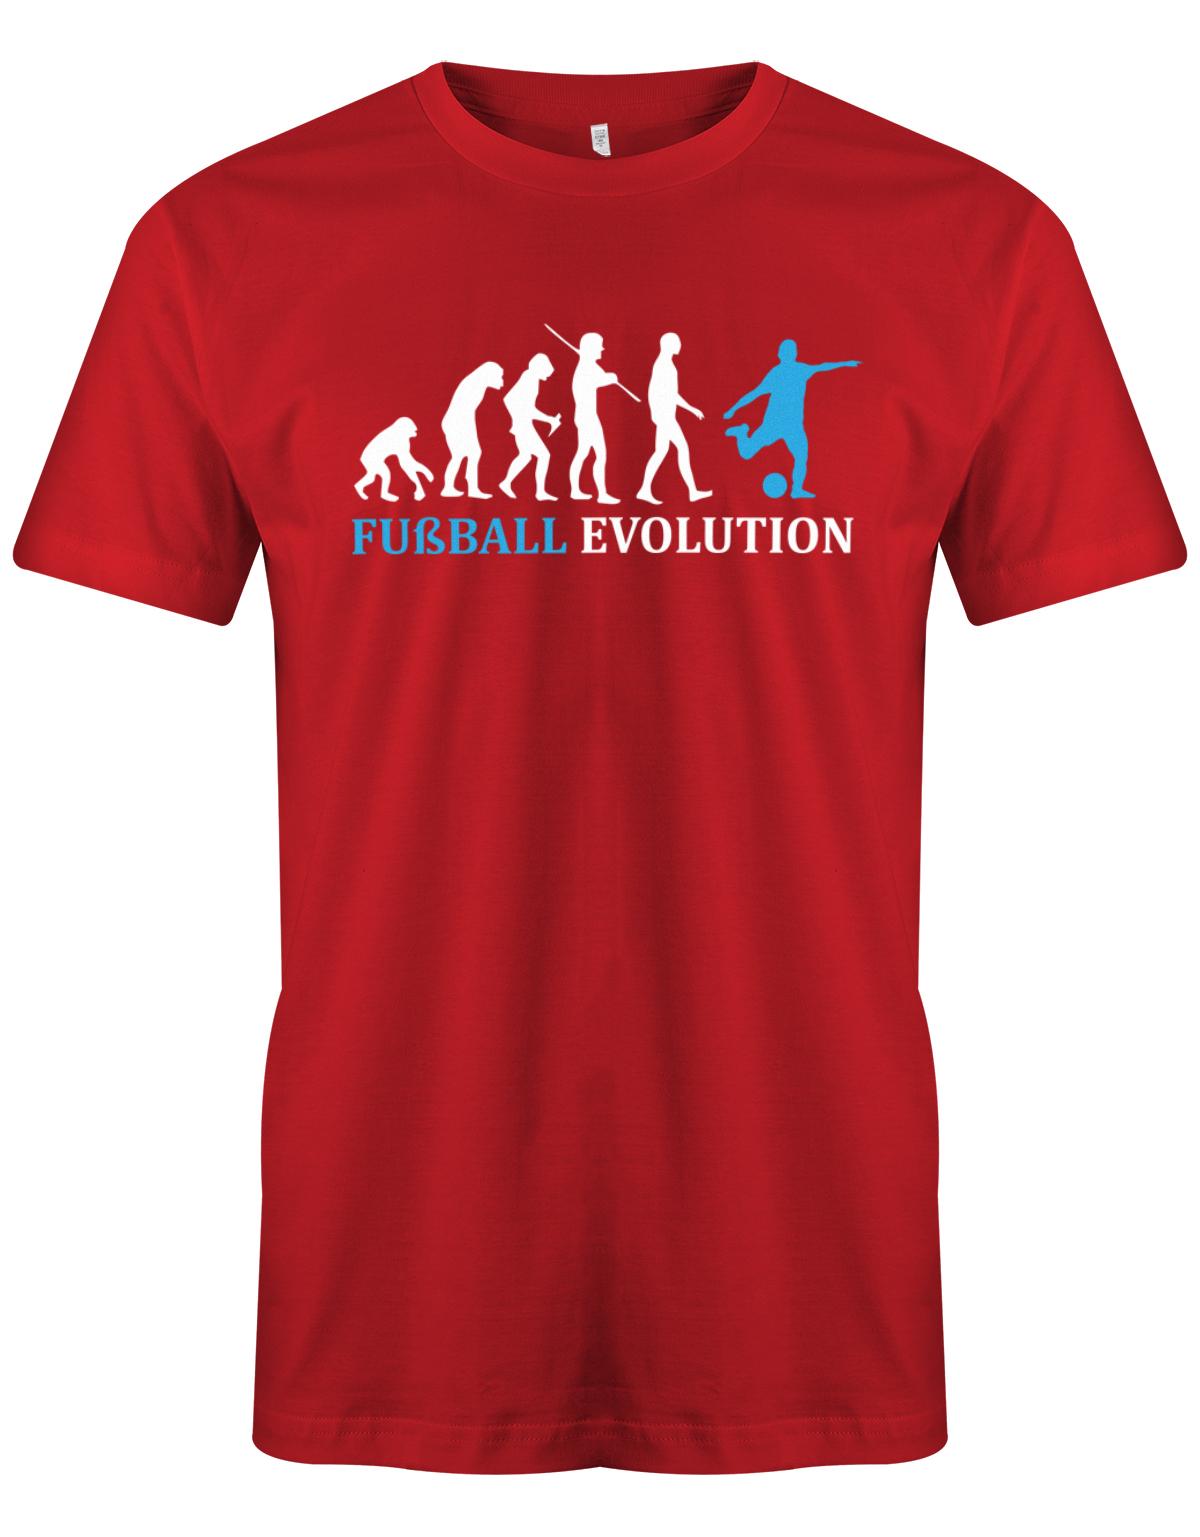 Fussball-Evolution-Herren-Shirt-Rot-Hellblau